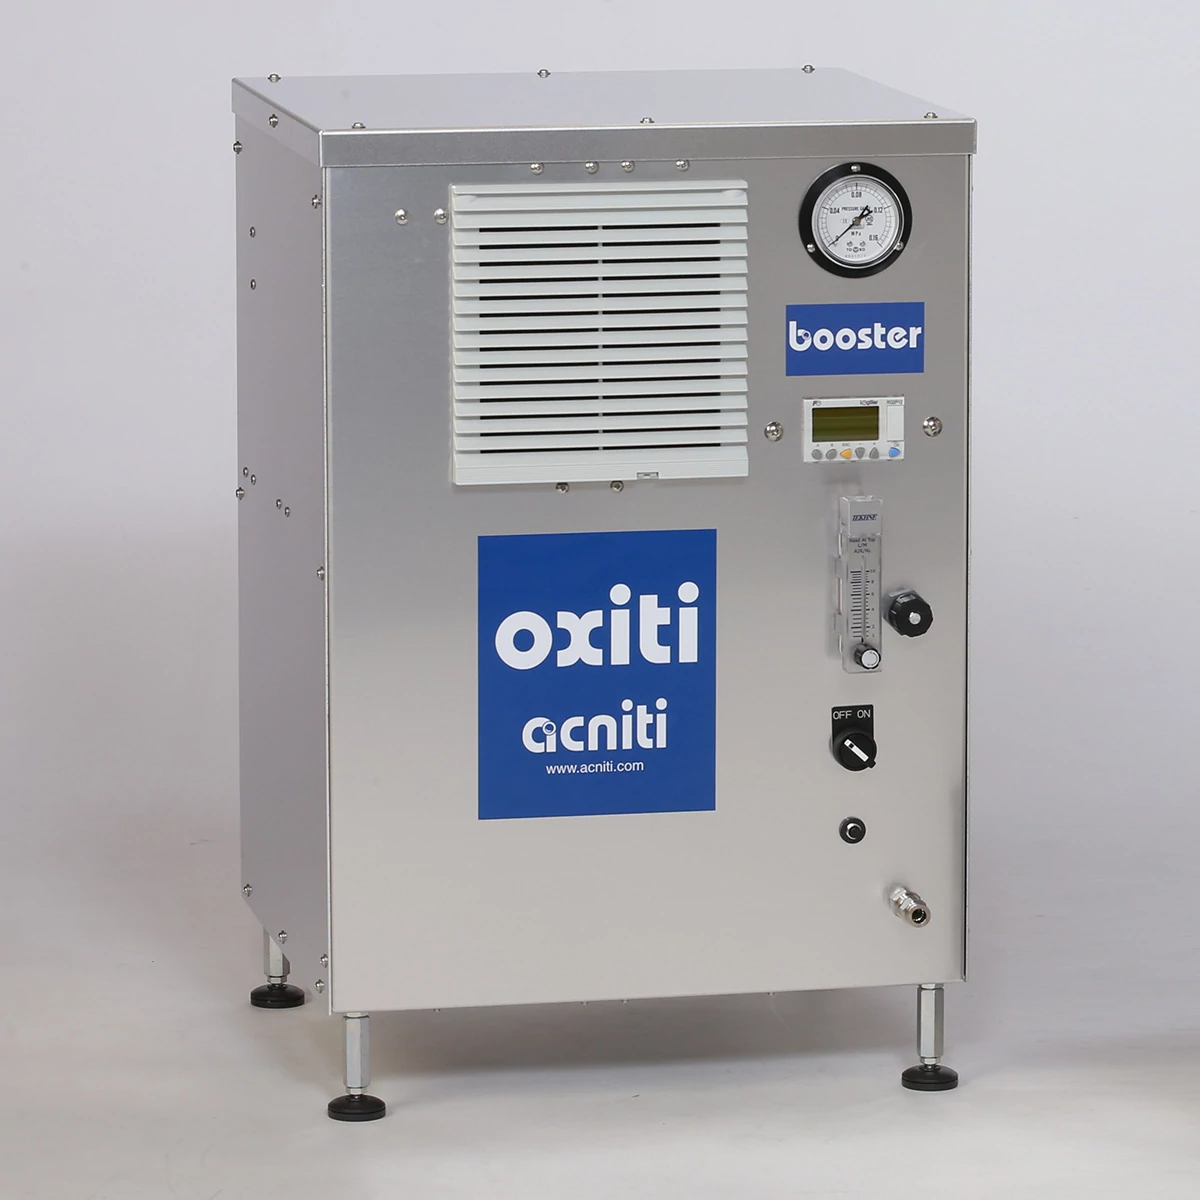 oxitiブースタ酸素濃縮器